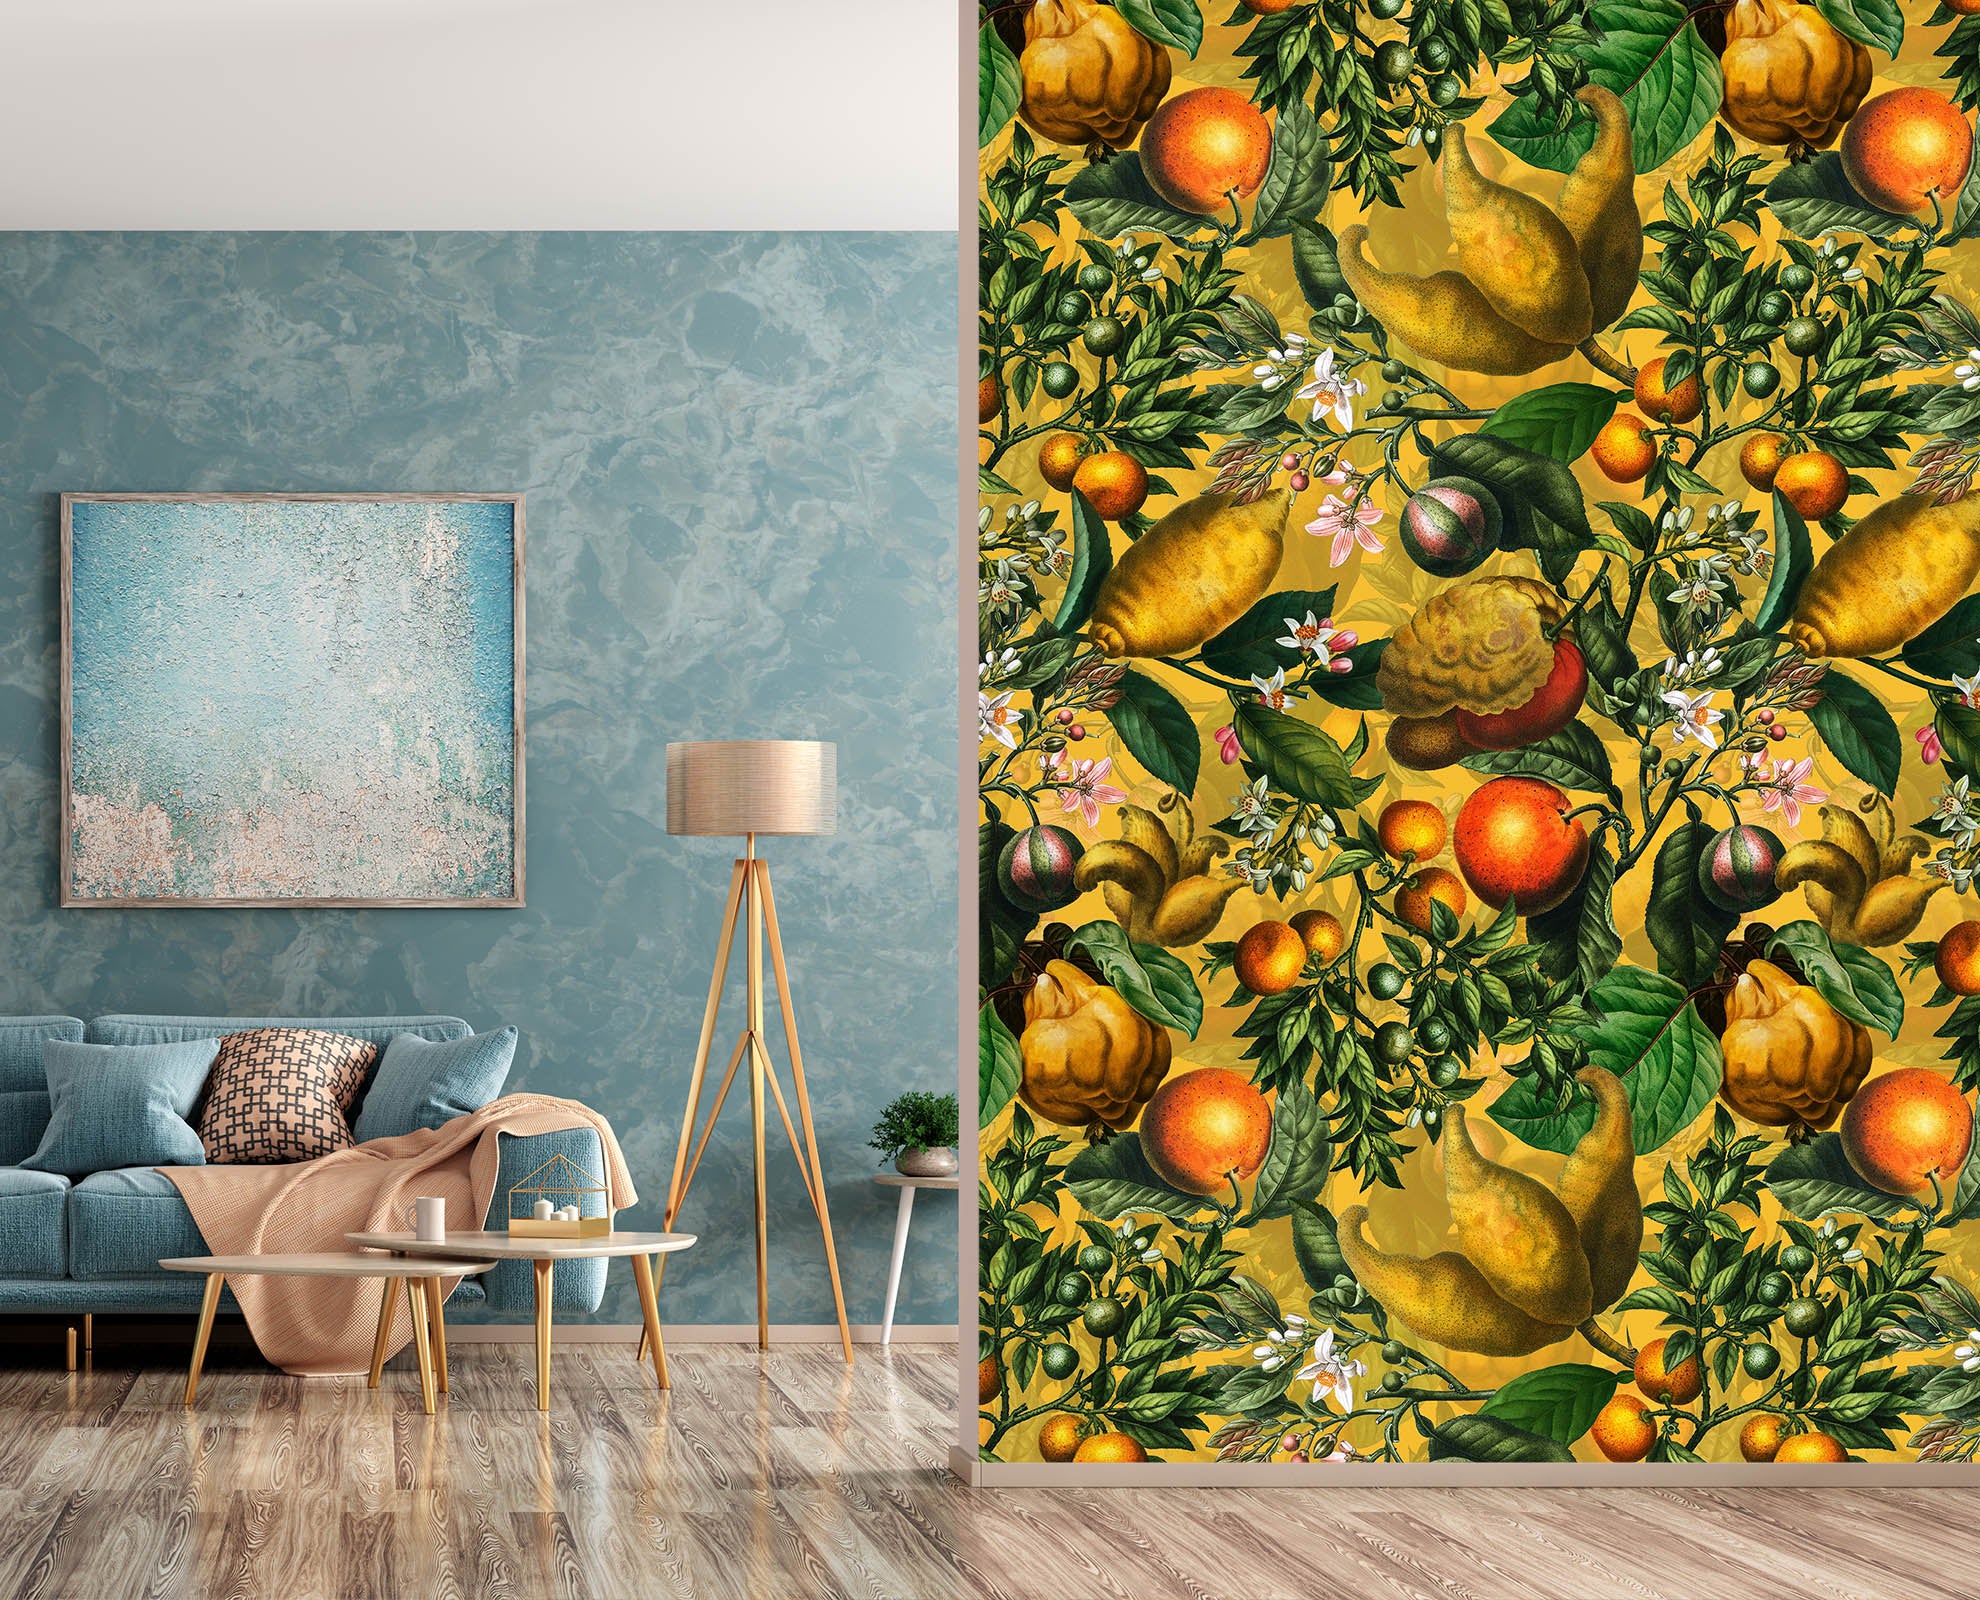 3D Golden Fruit 185 Uta Naumann Wall Mural Wall Murals